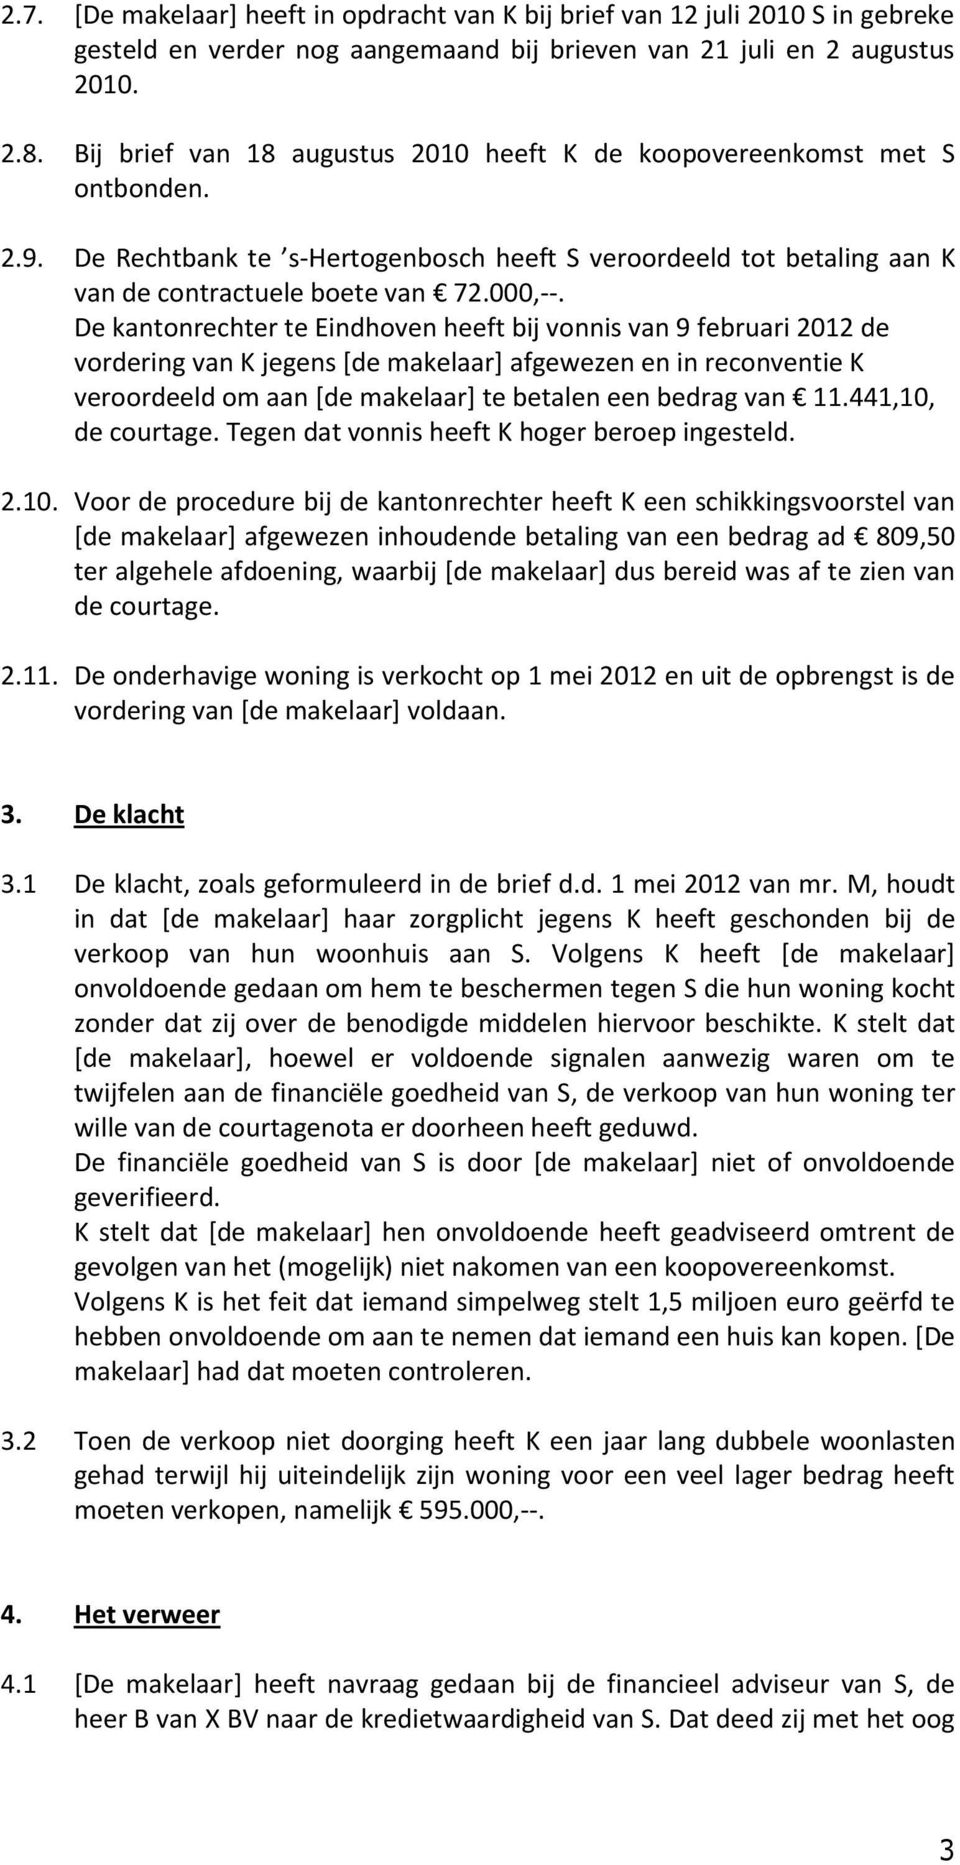 De kantonrechter te Eindhoven heeft bij vonnis van 9 februari 2012 de vordering van K jegens [de makelaar] afgewezen en in reconventie K veroordeeld om aan [de makelaar] te betalen een bedrag van 11.